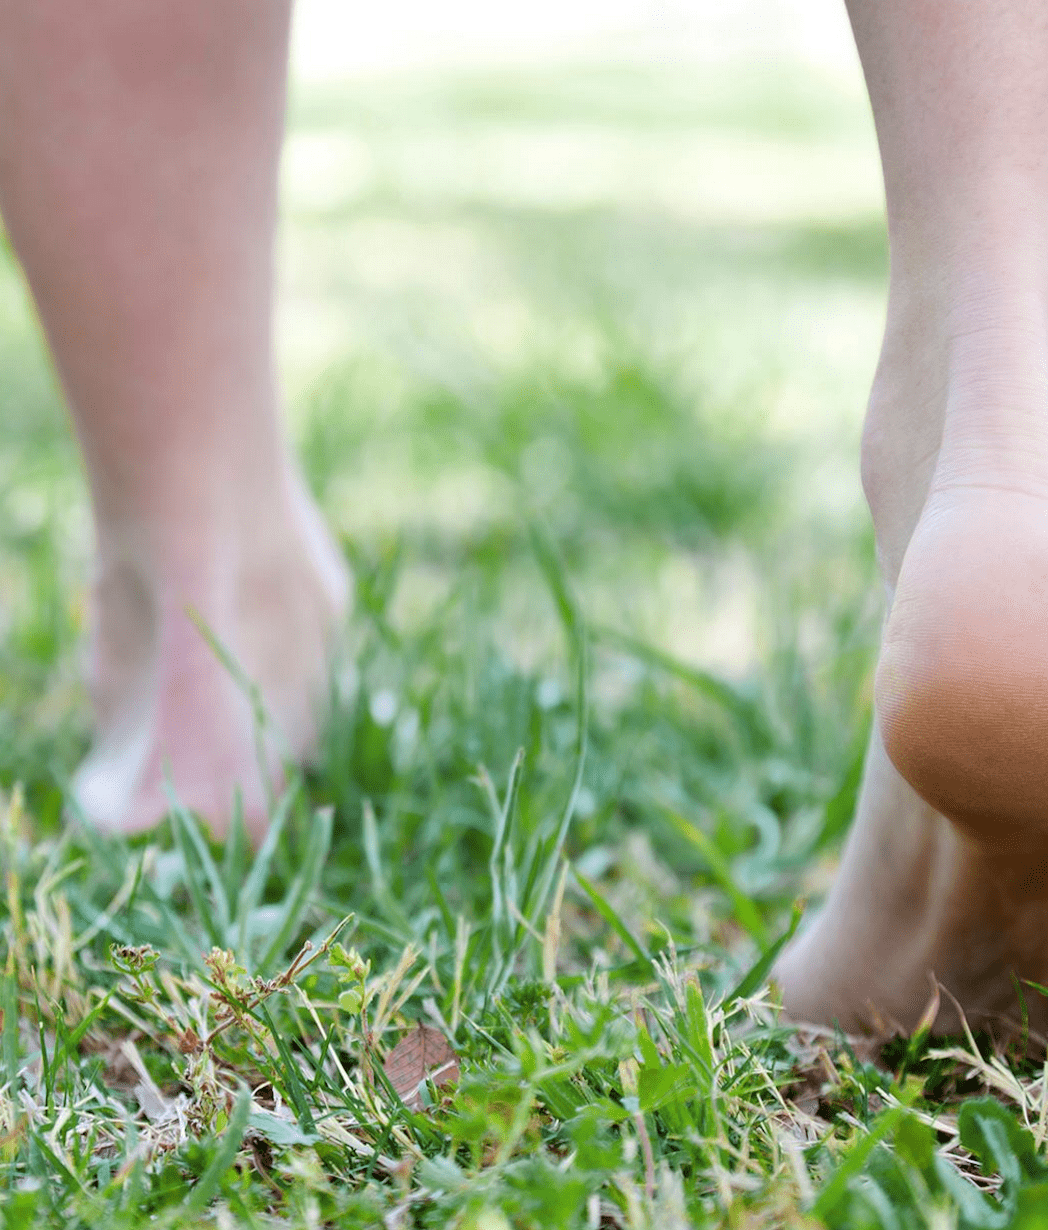 Rose kleur jogger Sociale wetenschappen Droge voeten behandelen | Advies bij voeten | NIVEA